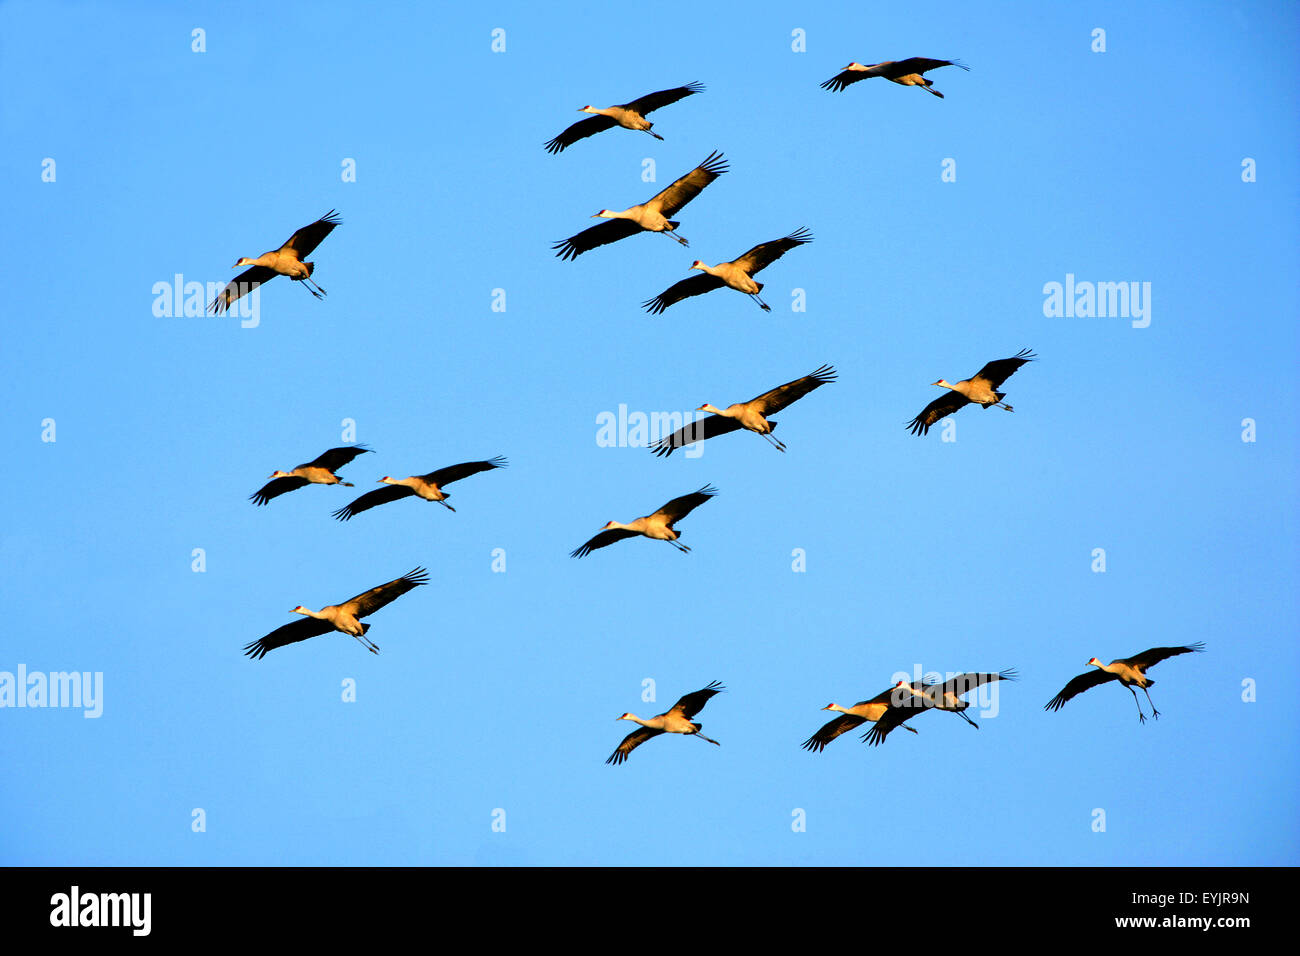 Herde von Kanadakranichen im Flug im blauen Himmel während der Migration Stockfoto